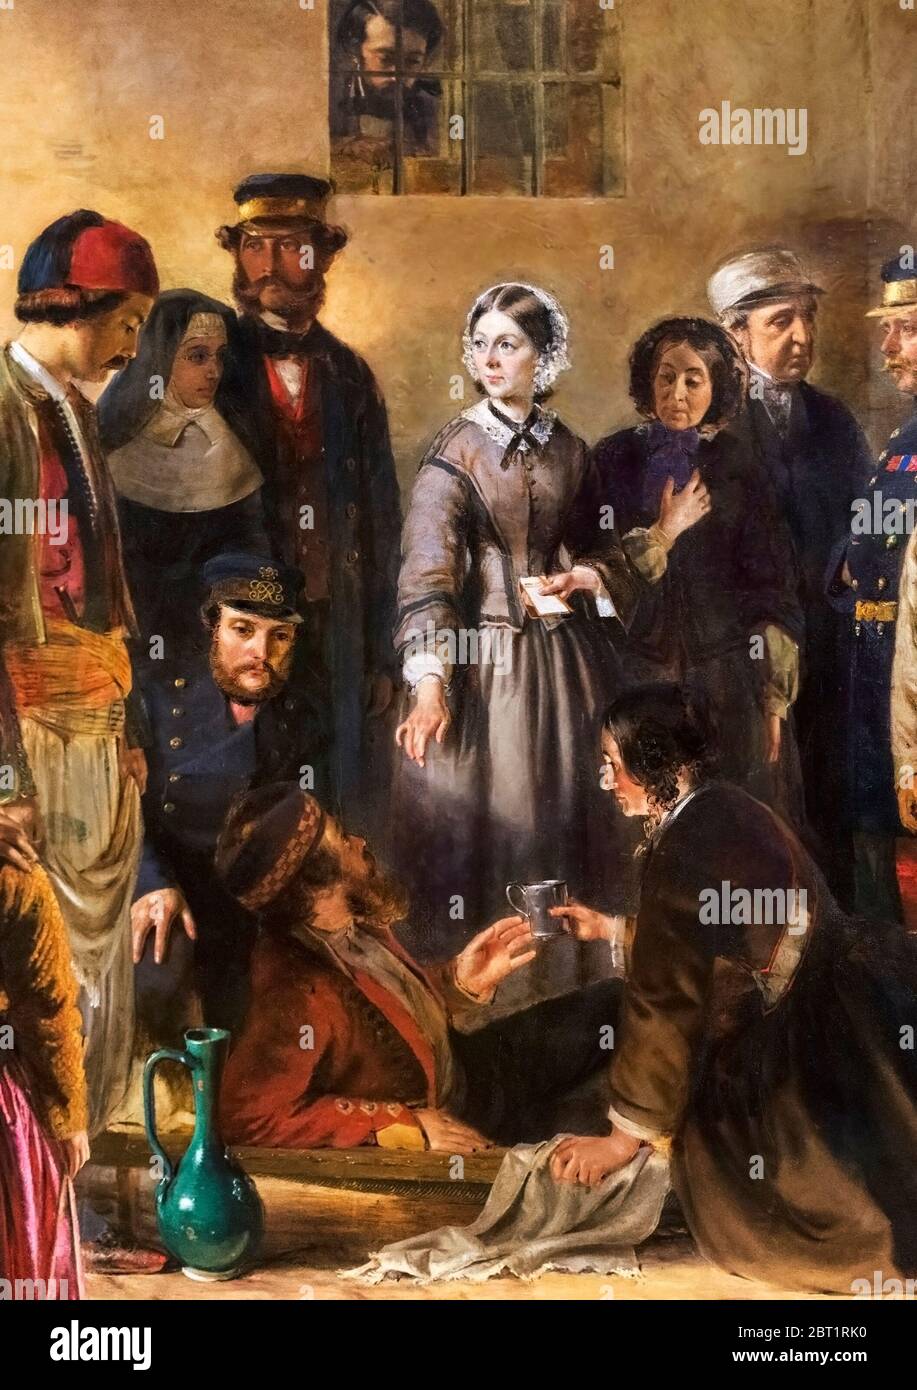 'La Mission de la Miséricorde: Florence Nightingale recevant les blessés à Scutari' par Jerry Barrett, huile sur toile, 1857. Banque D'Images